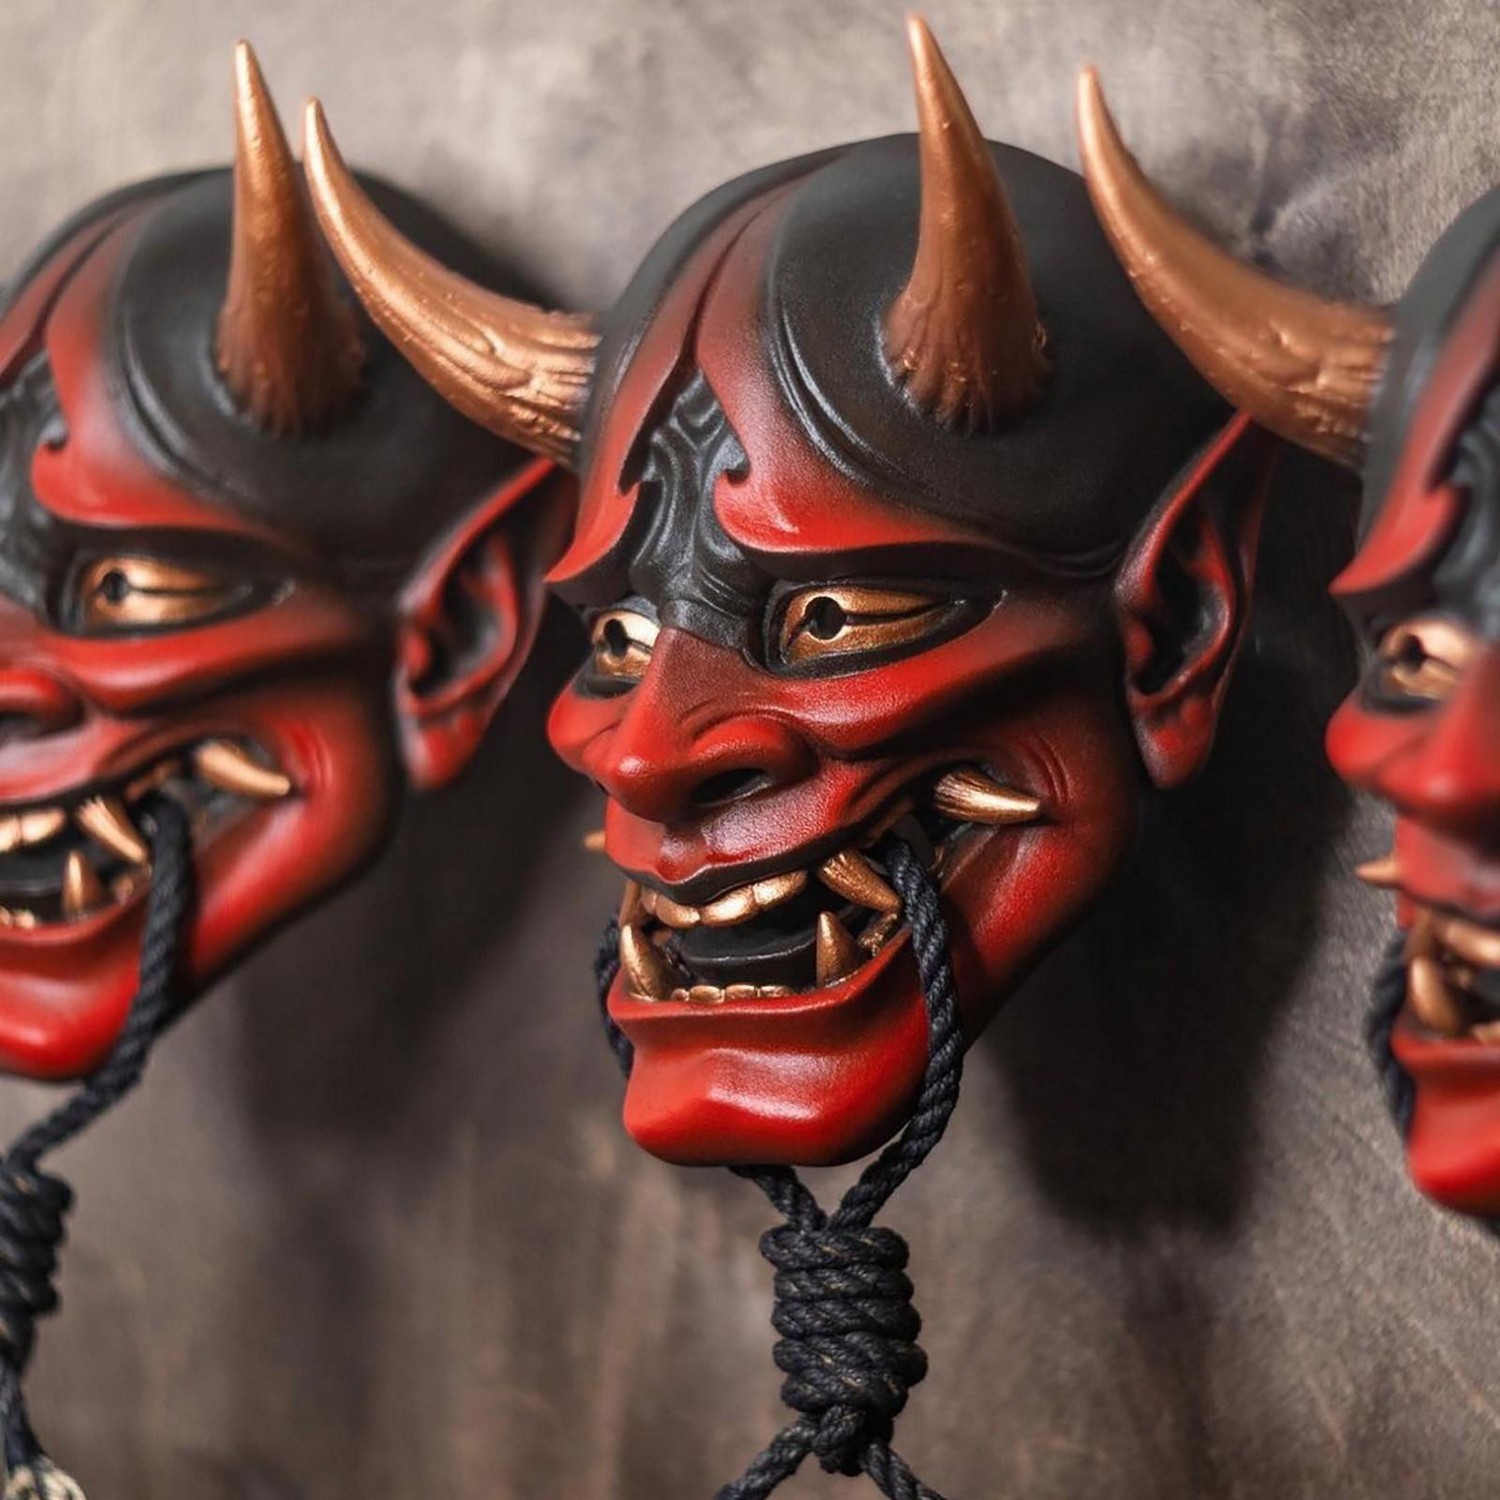 Dämonenkopfmaske für Halloween - japanisches Motiv